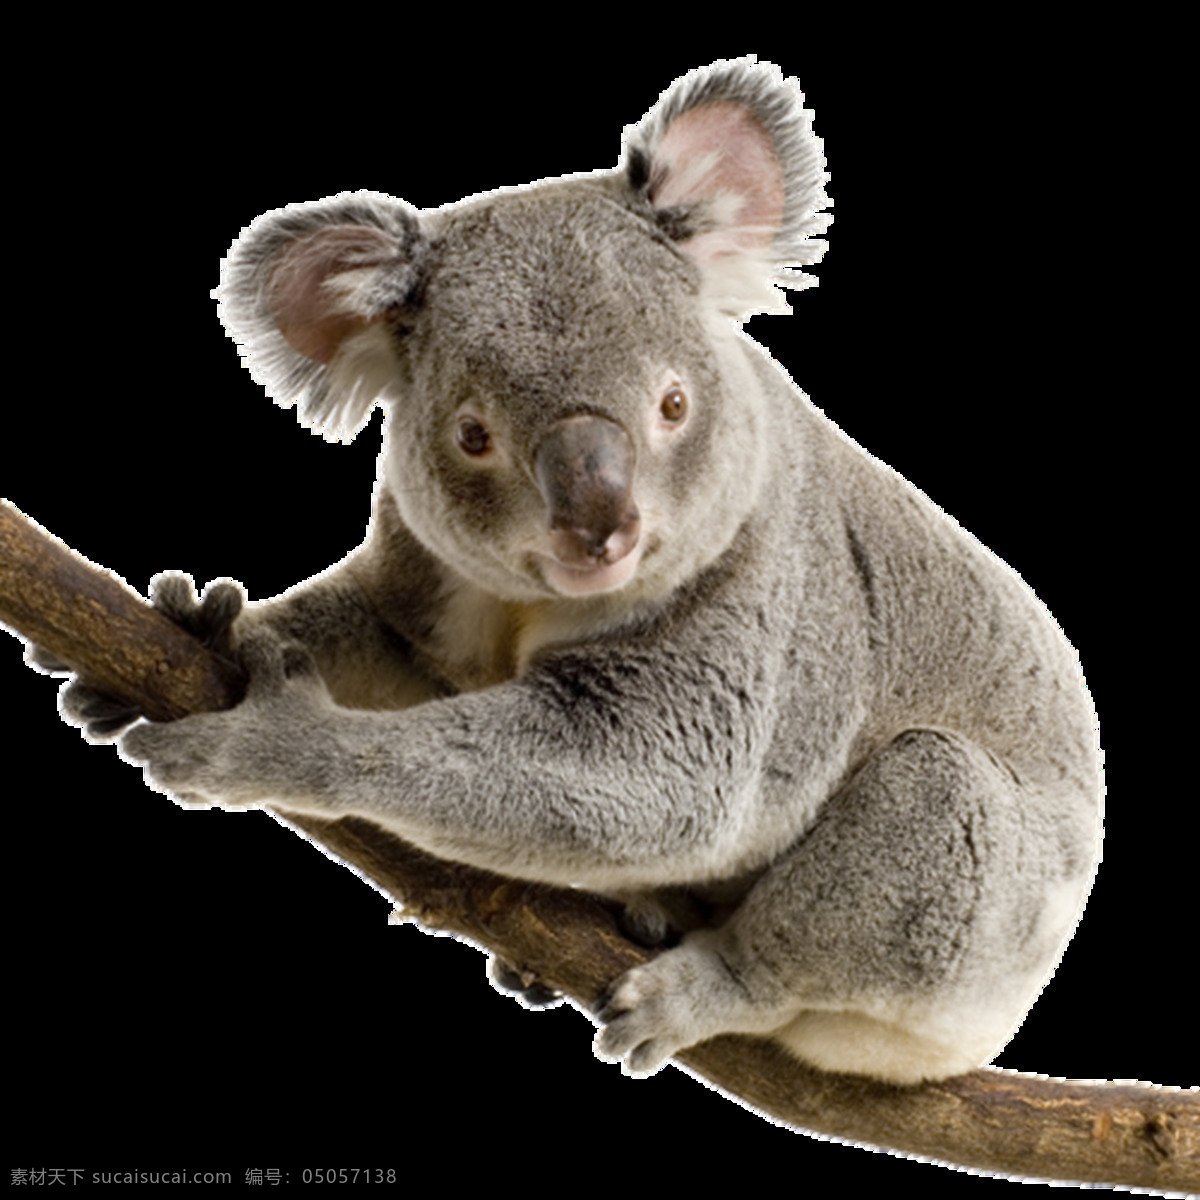 考拉图片 树袋熊 考拉 无尾熊 png图 透明图 免扣图 透明背景 透明底 抠图 生物世界 野生动物